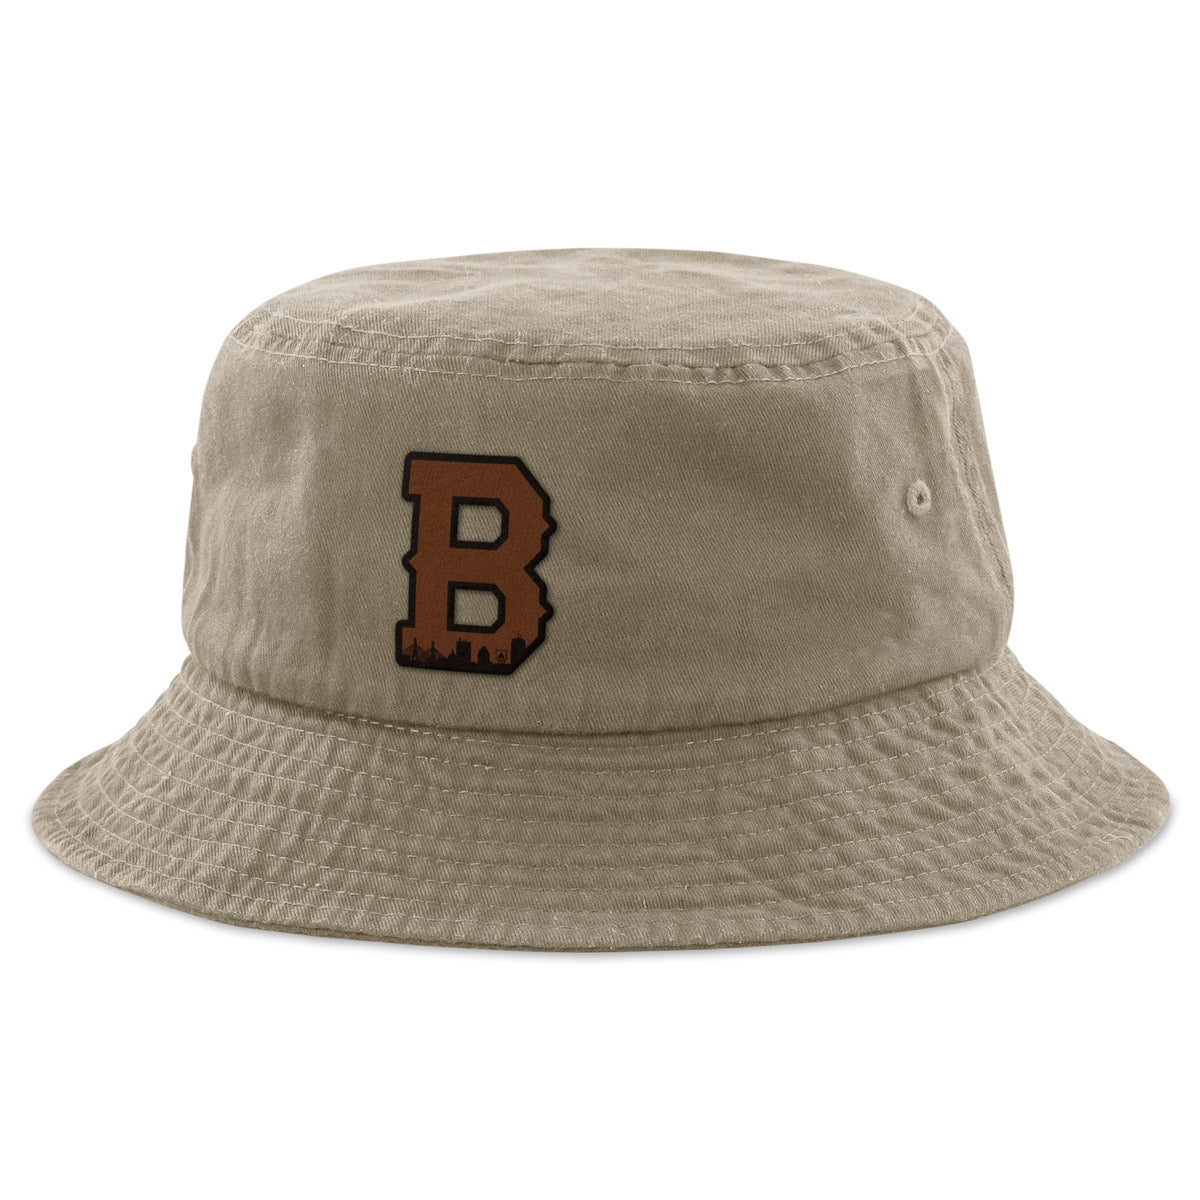 Boston B Skyline Leather Patch Bucket Hat - Chowdaheadz